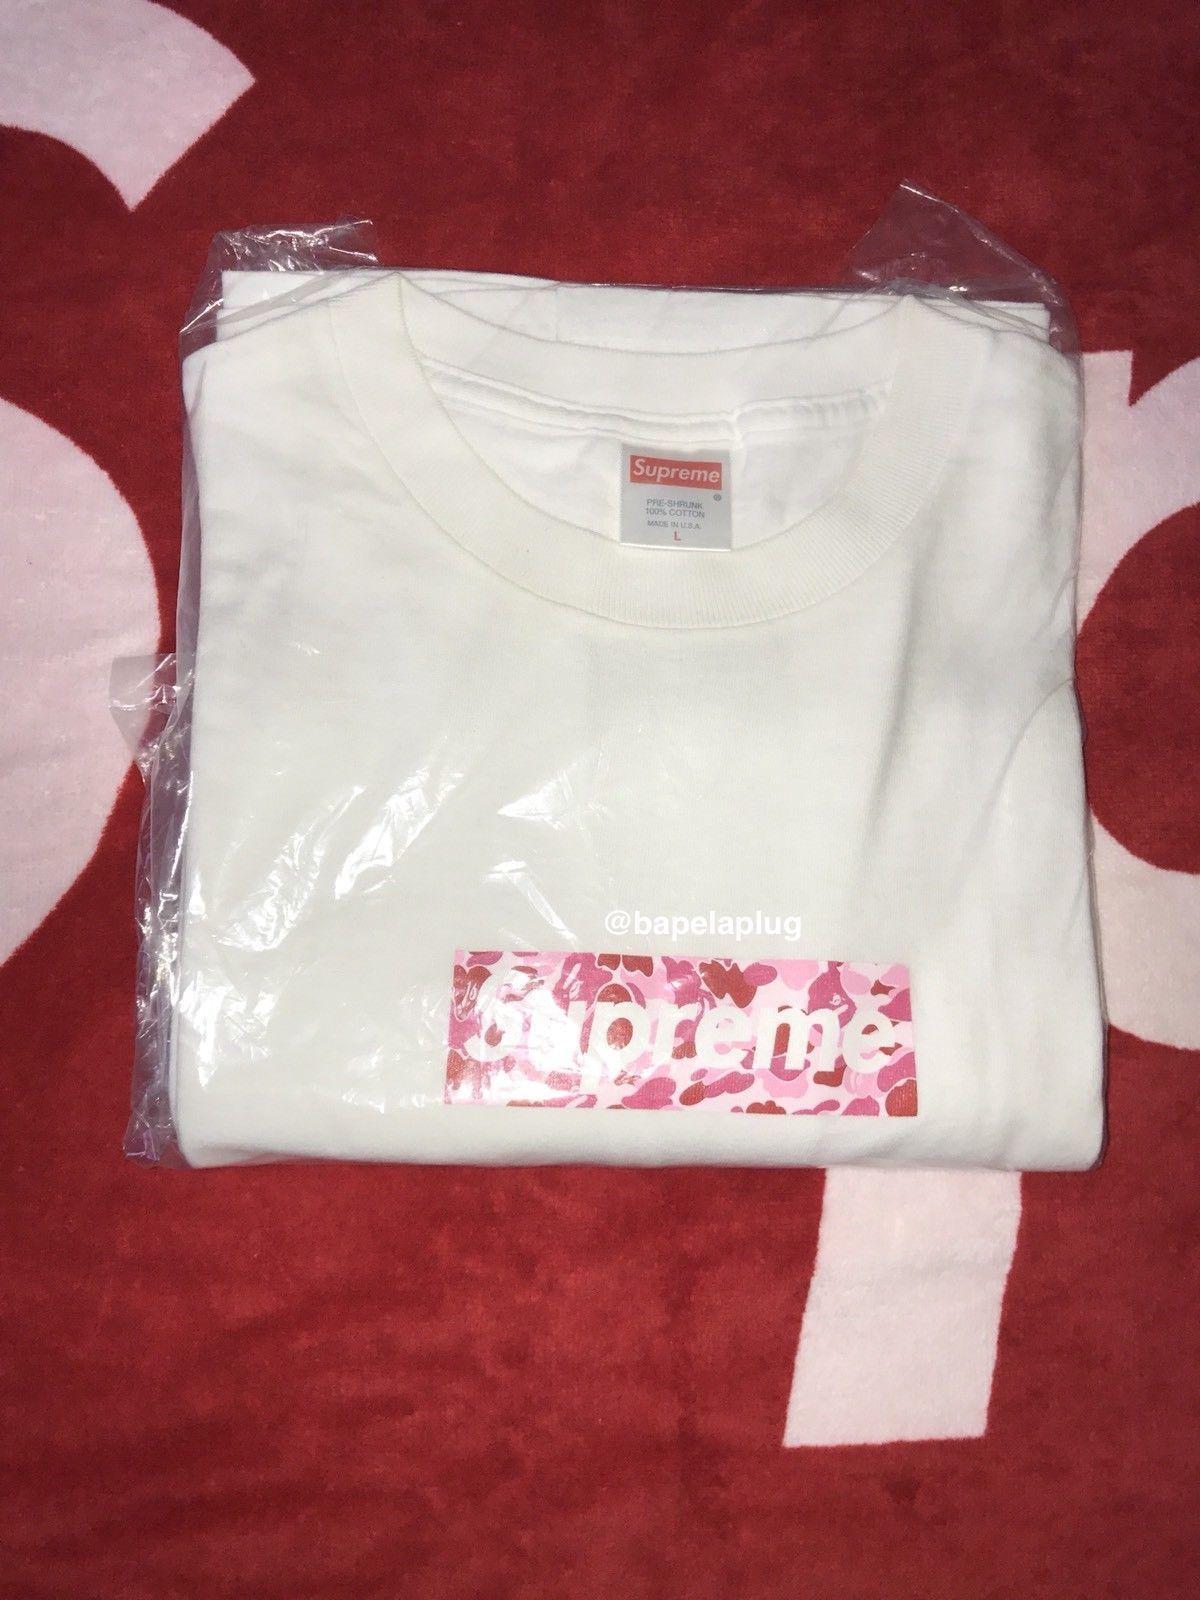 Bape Camo Supreme Box Logo - SUPREME x BAPE Pink ABC Camo Box Logo T-shirt WHITE L Large Japan A ...